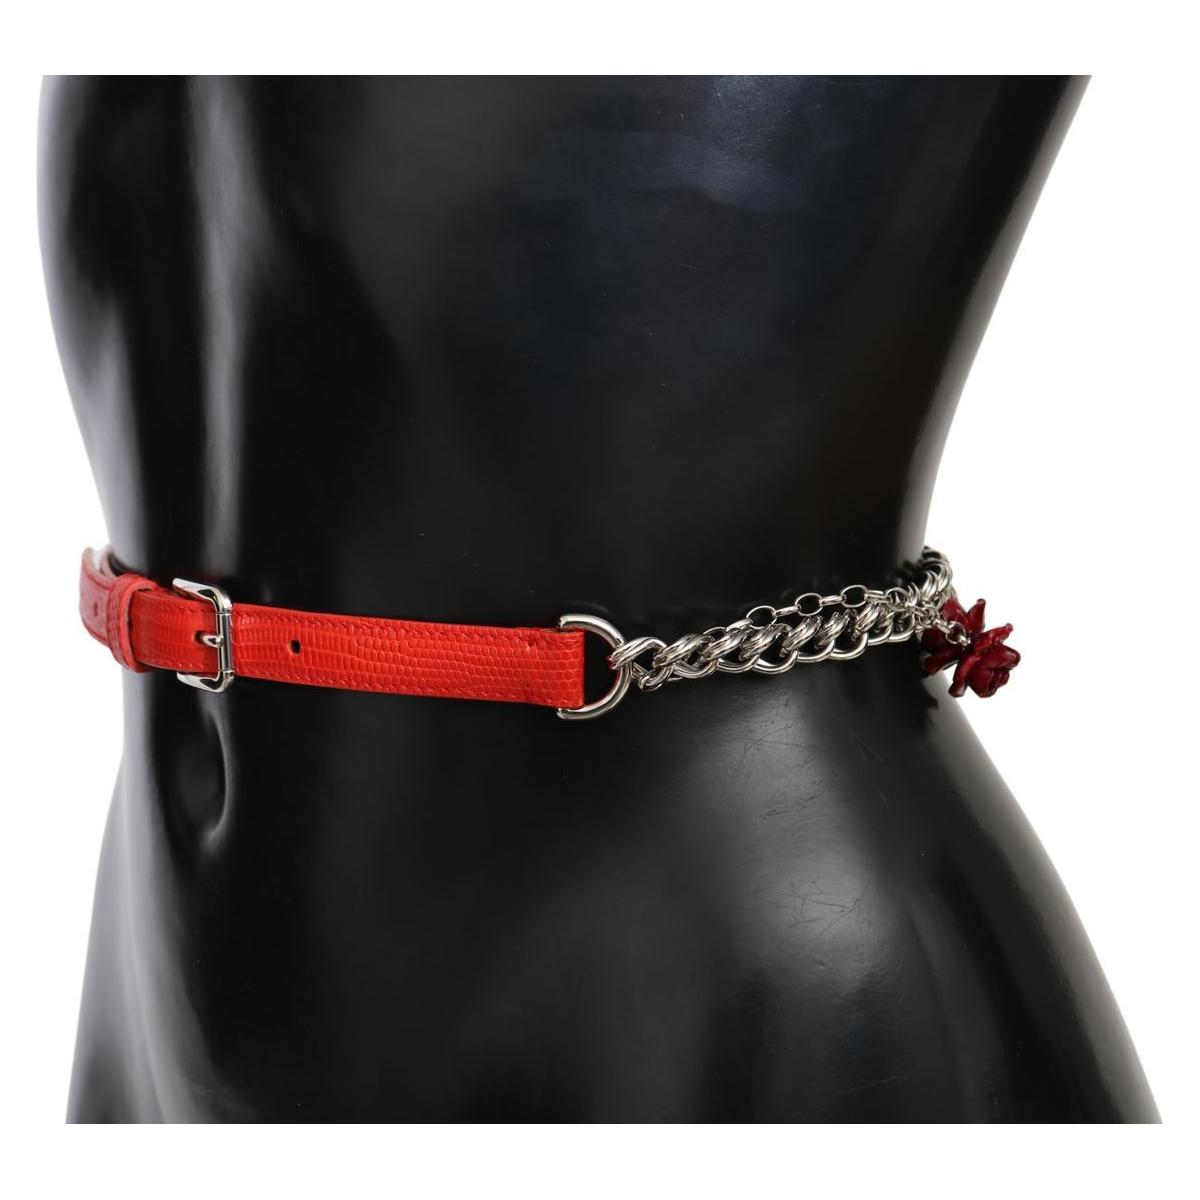 Dolce & Gabbana Elegant Floral Rose Waist Belt in Vibrant Red red-leather-roses-floral-silver-waist-belt Belt IMG_9988-66ee5f4a-2f6.jpg